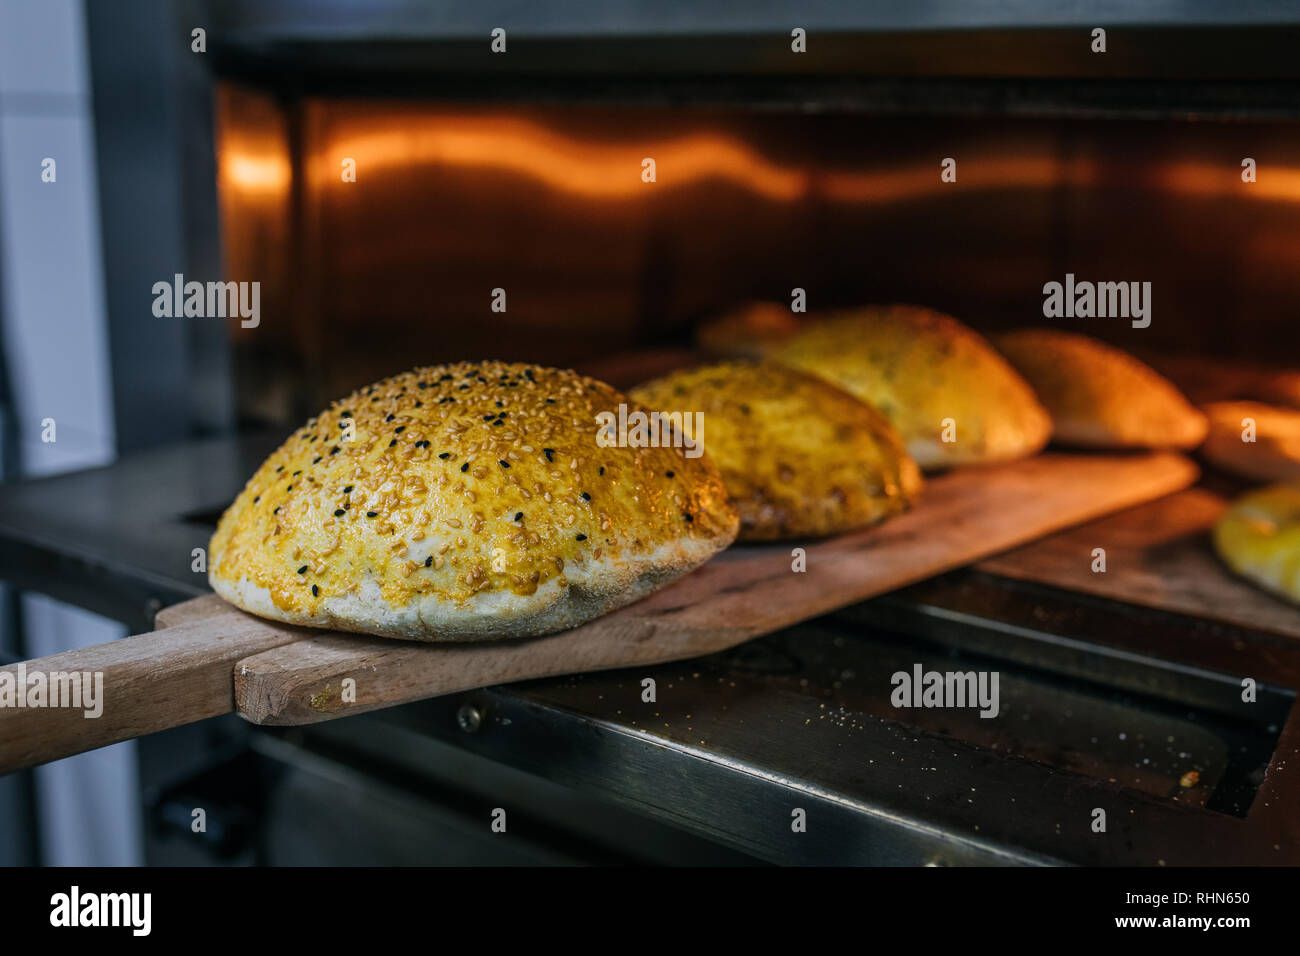 Traditionelle türkische Pita oder pide Brot im Ofen oder Herd. Bäckerei  oder backstube Konzept Bild Stockfotografie - Alamy